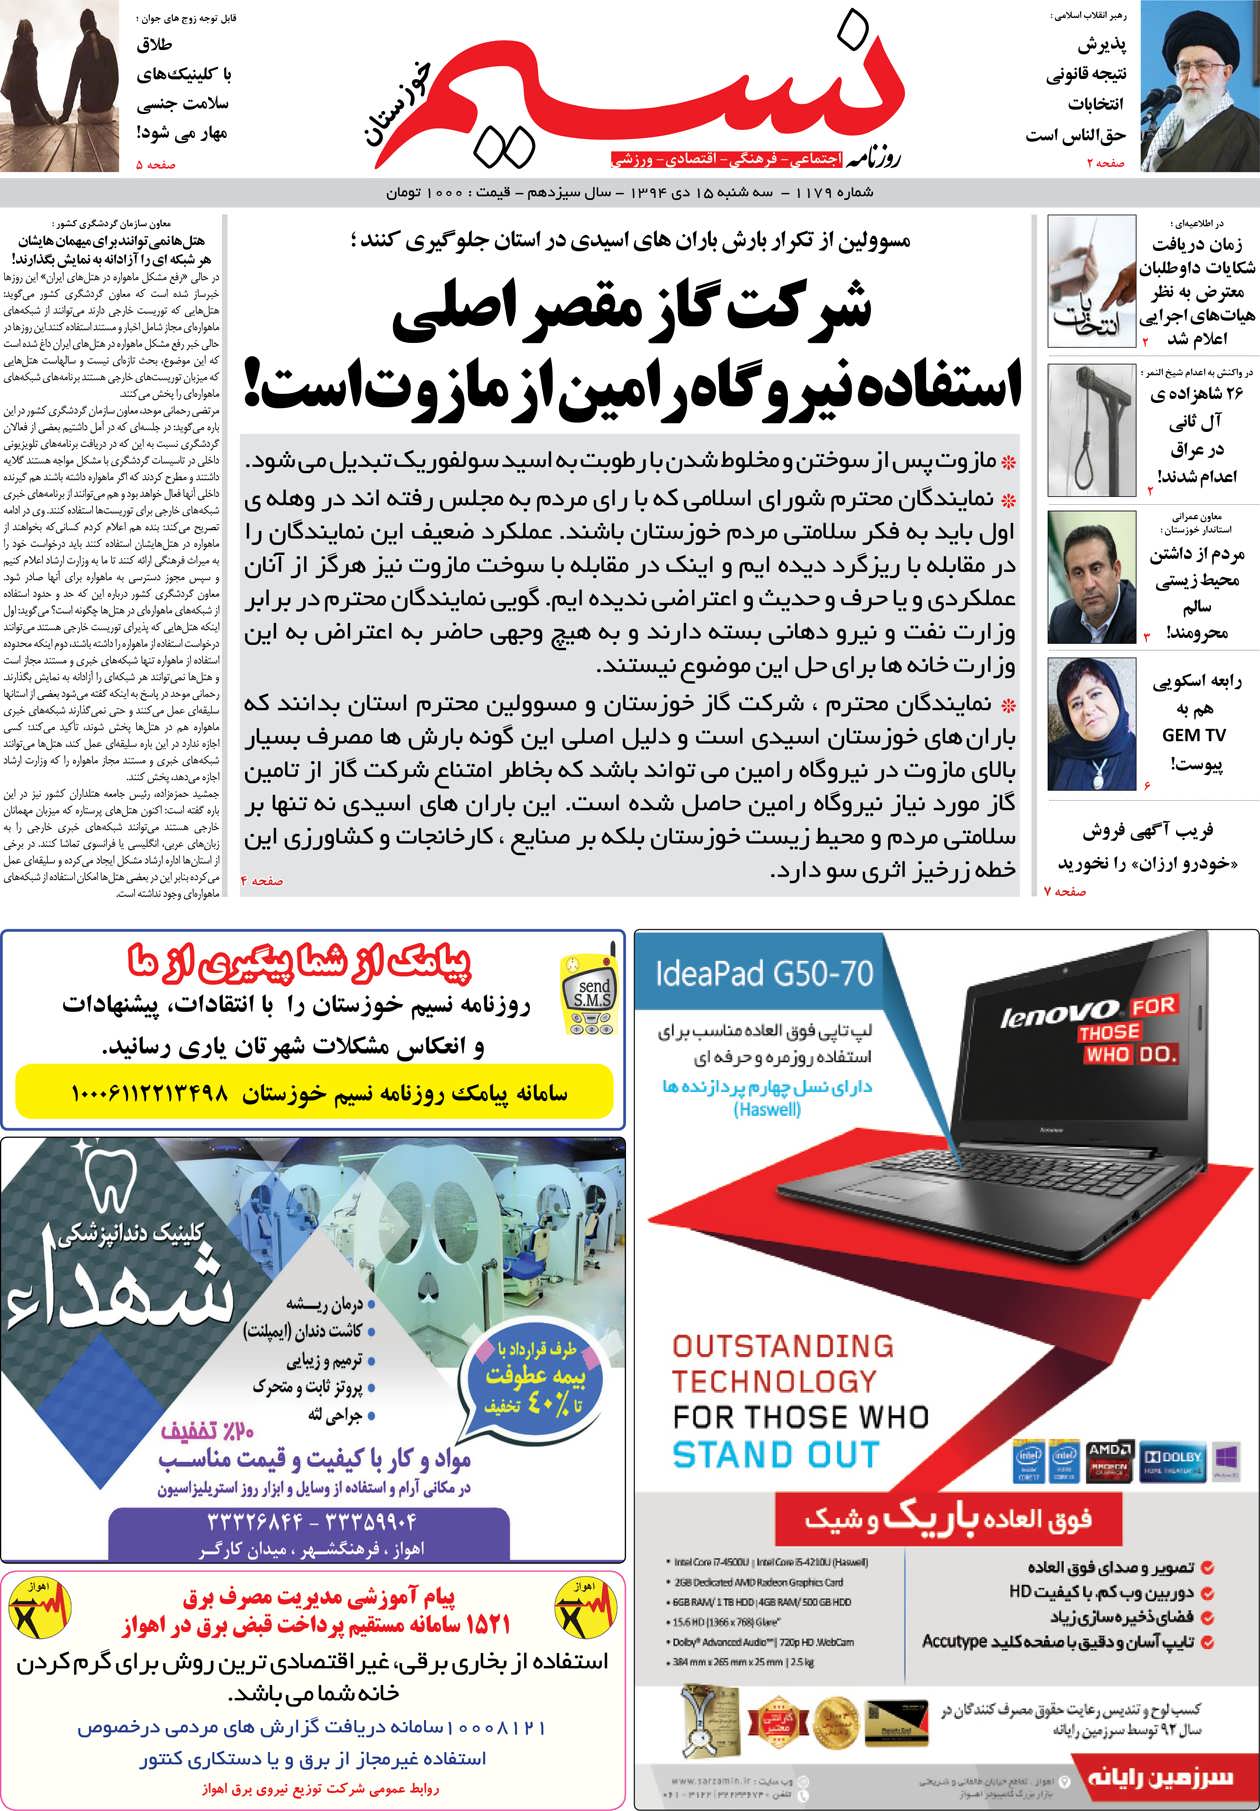 صفحه اصلی روزنامه نسیم شماره 1179